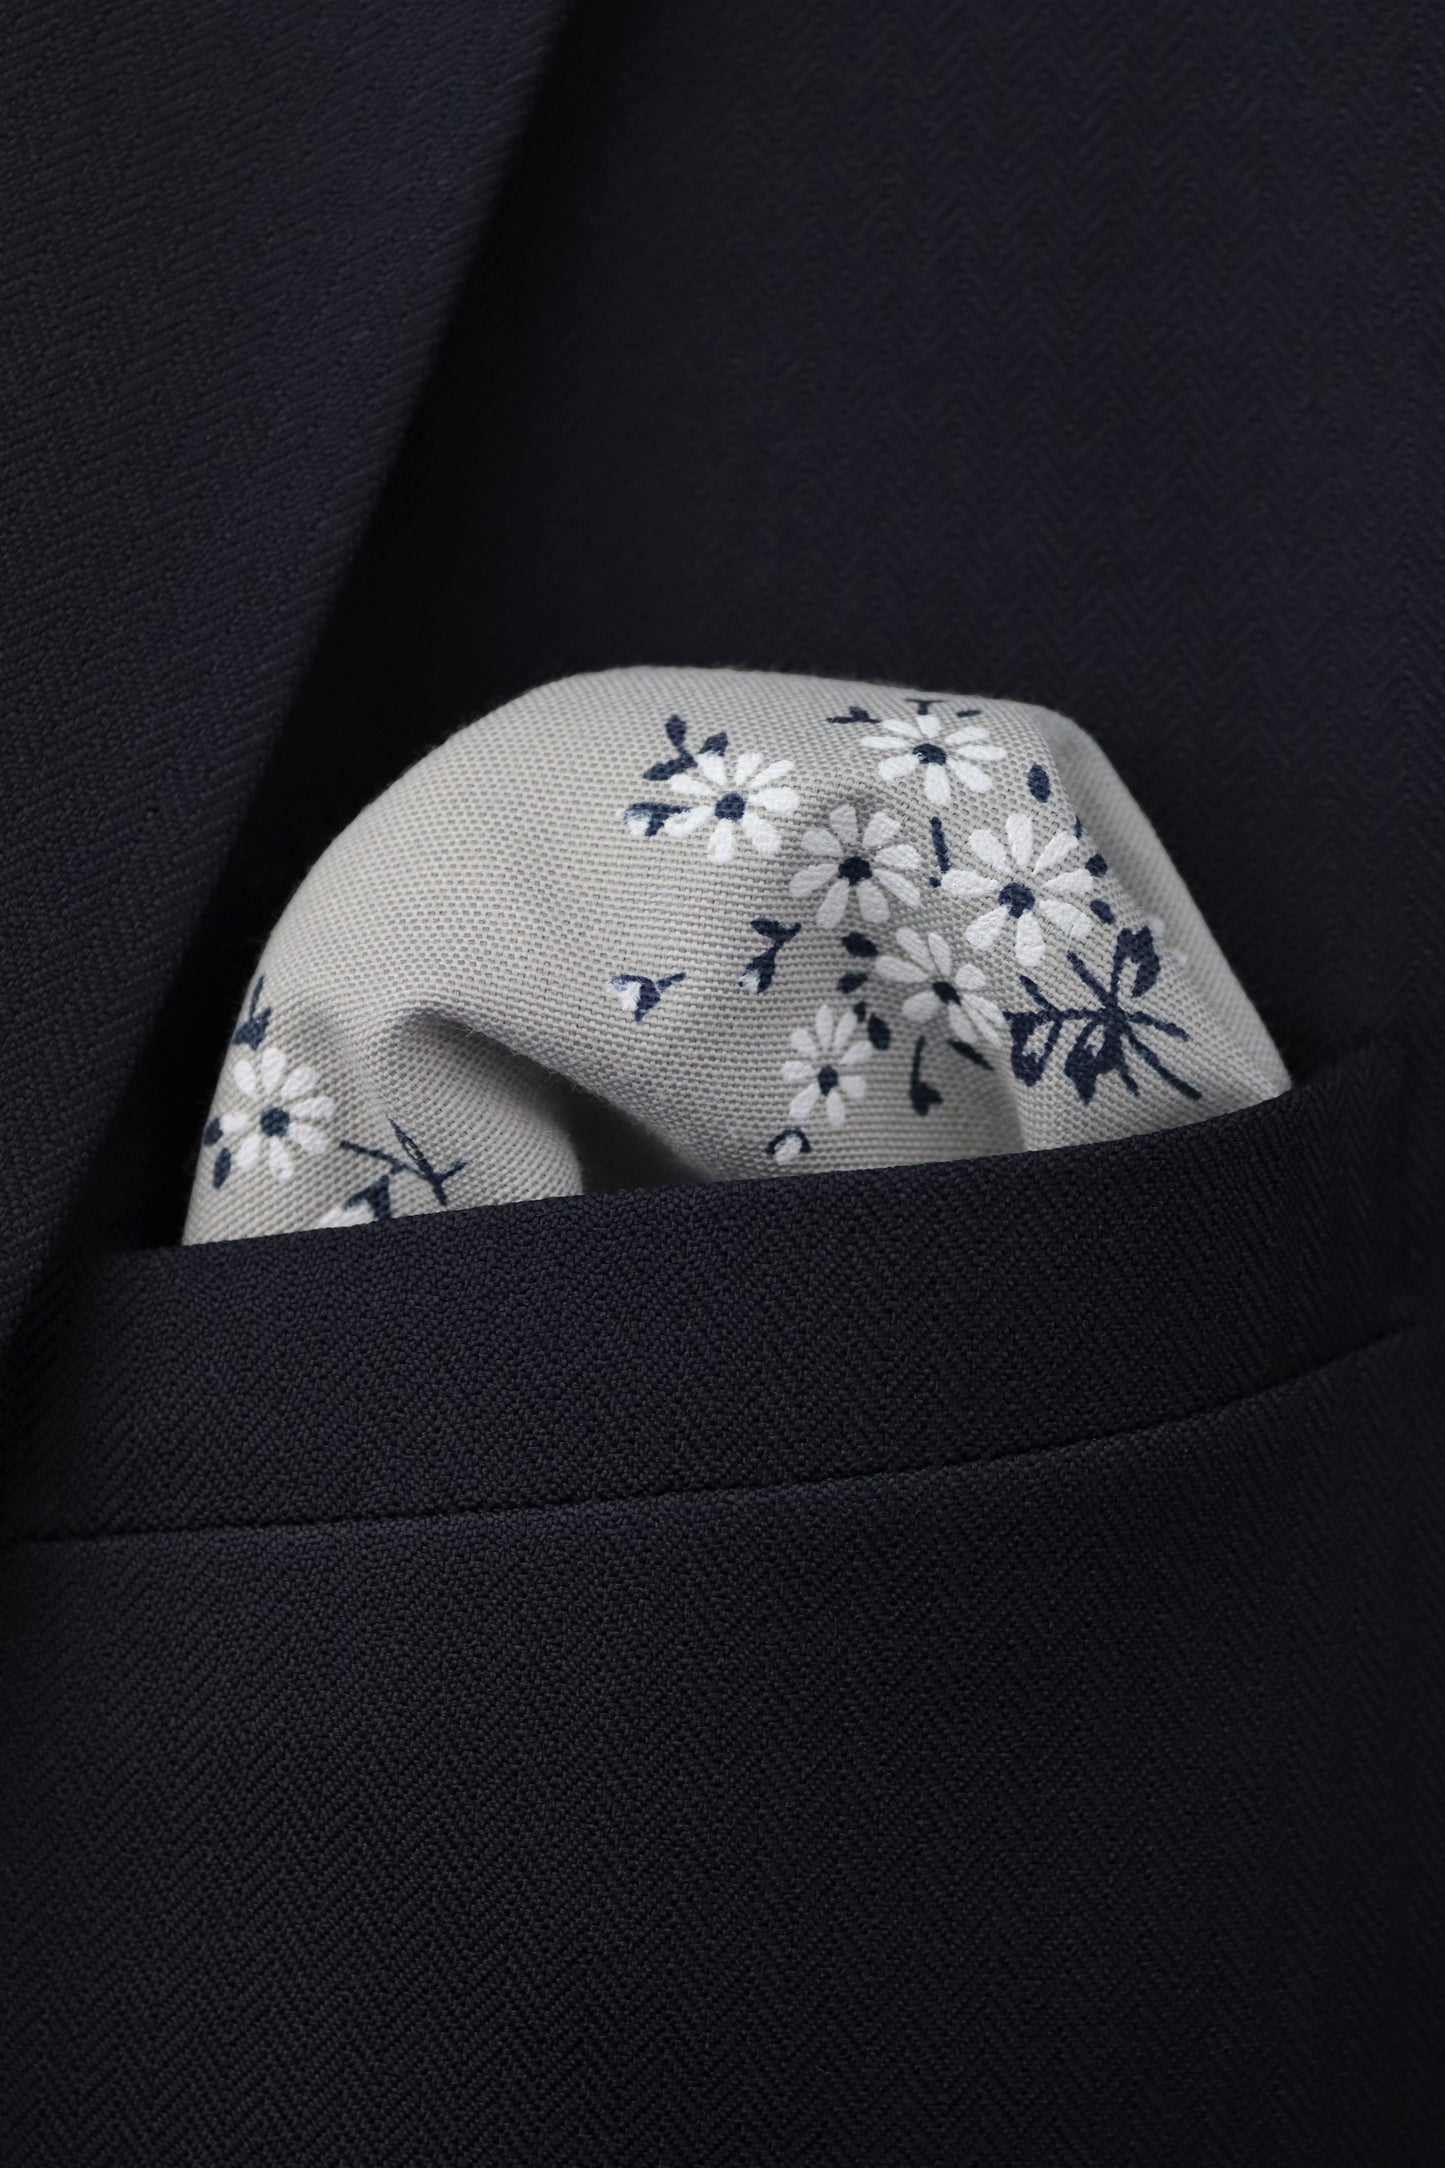 100% Cotton Floral Print Tie - Grey & Navy